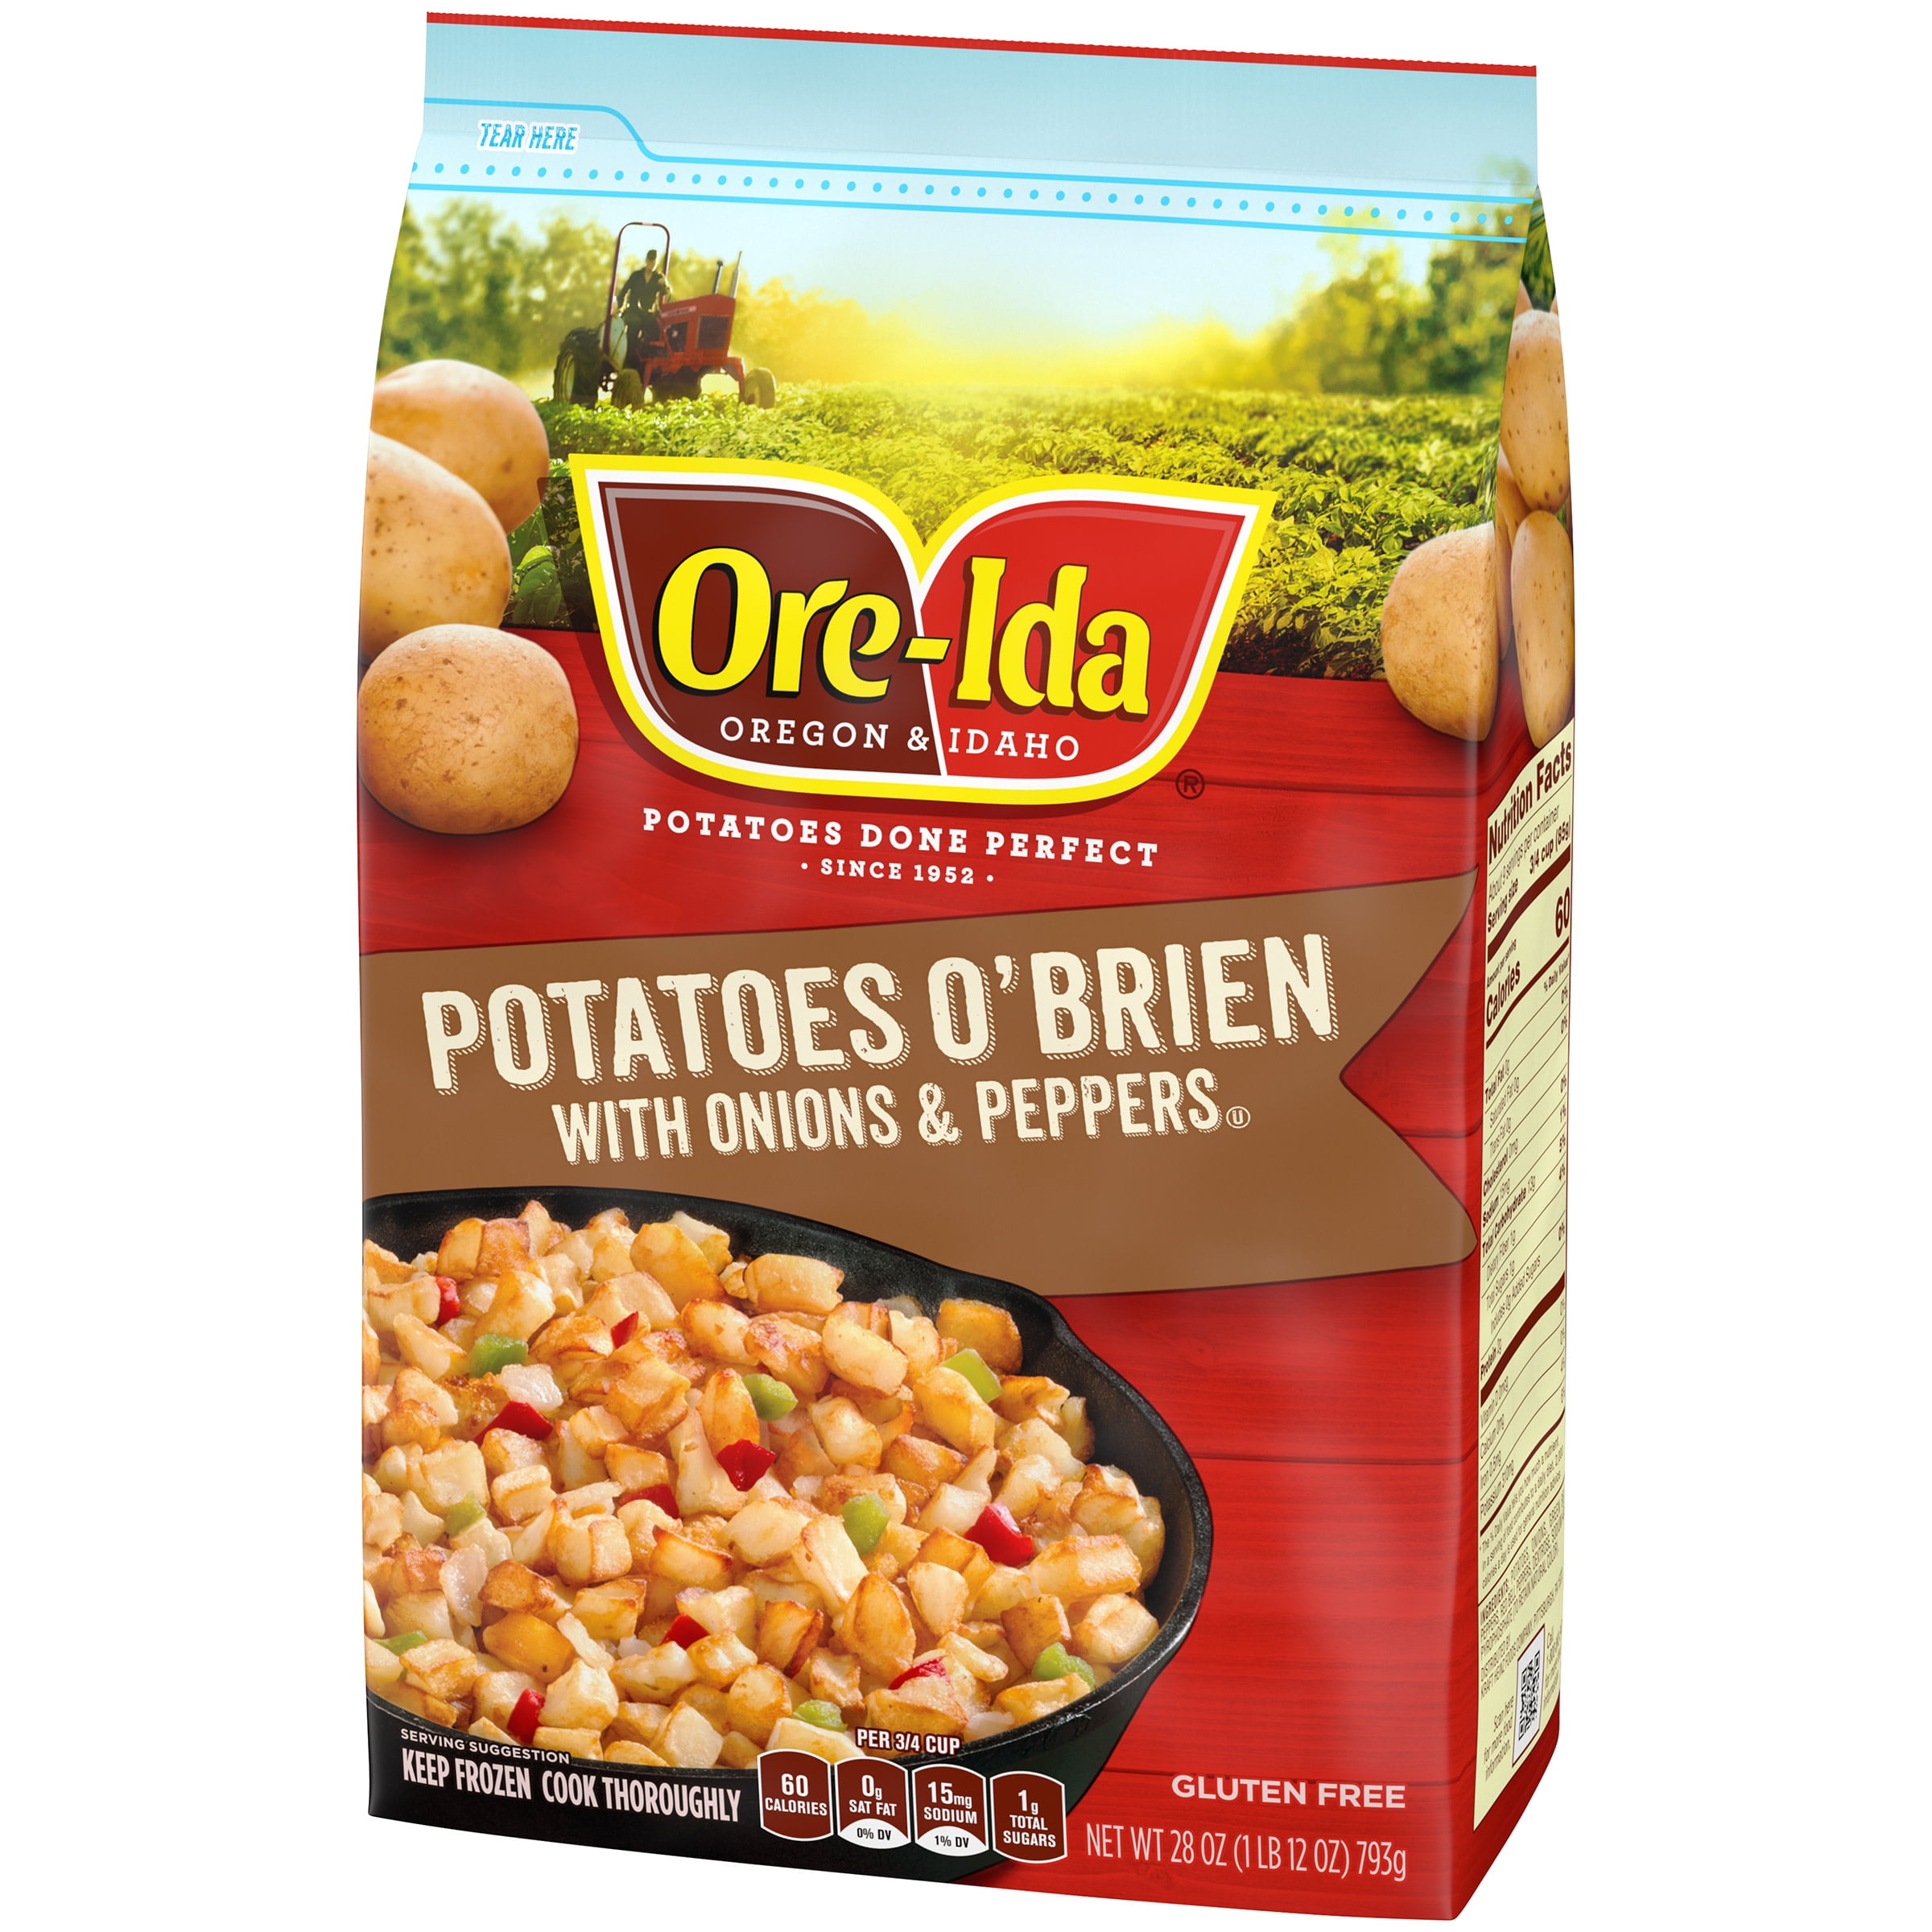 Ore Ida Potatoes O Brien With Onions Peppers Potatoes 28 Oz Bag Walmart Com Walmart Com